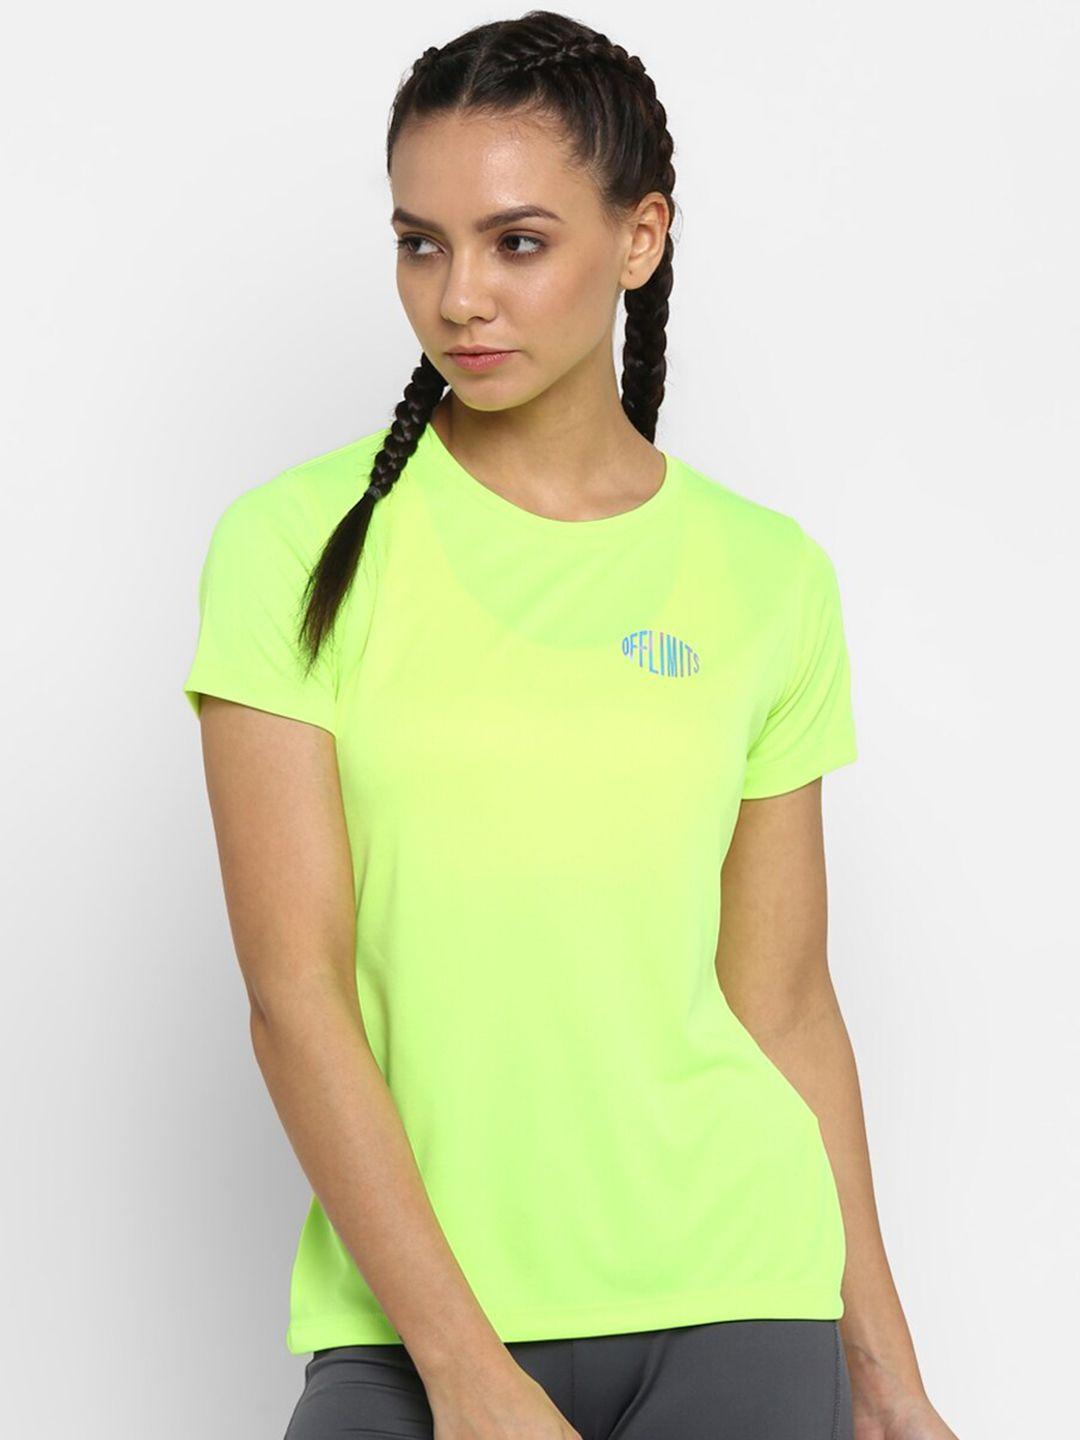 off limits women fluorescent green brand logo t-shirt